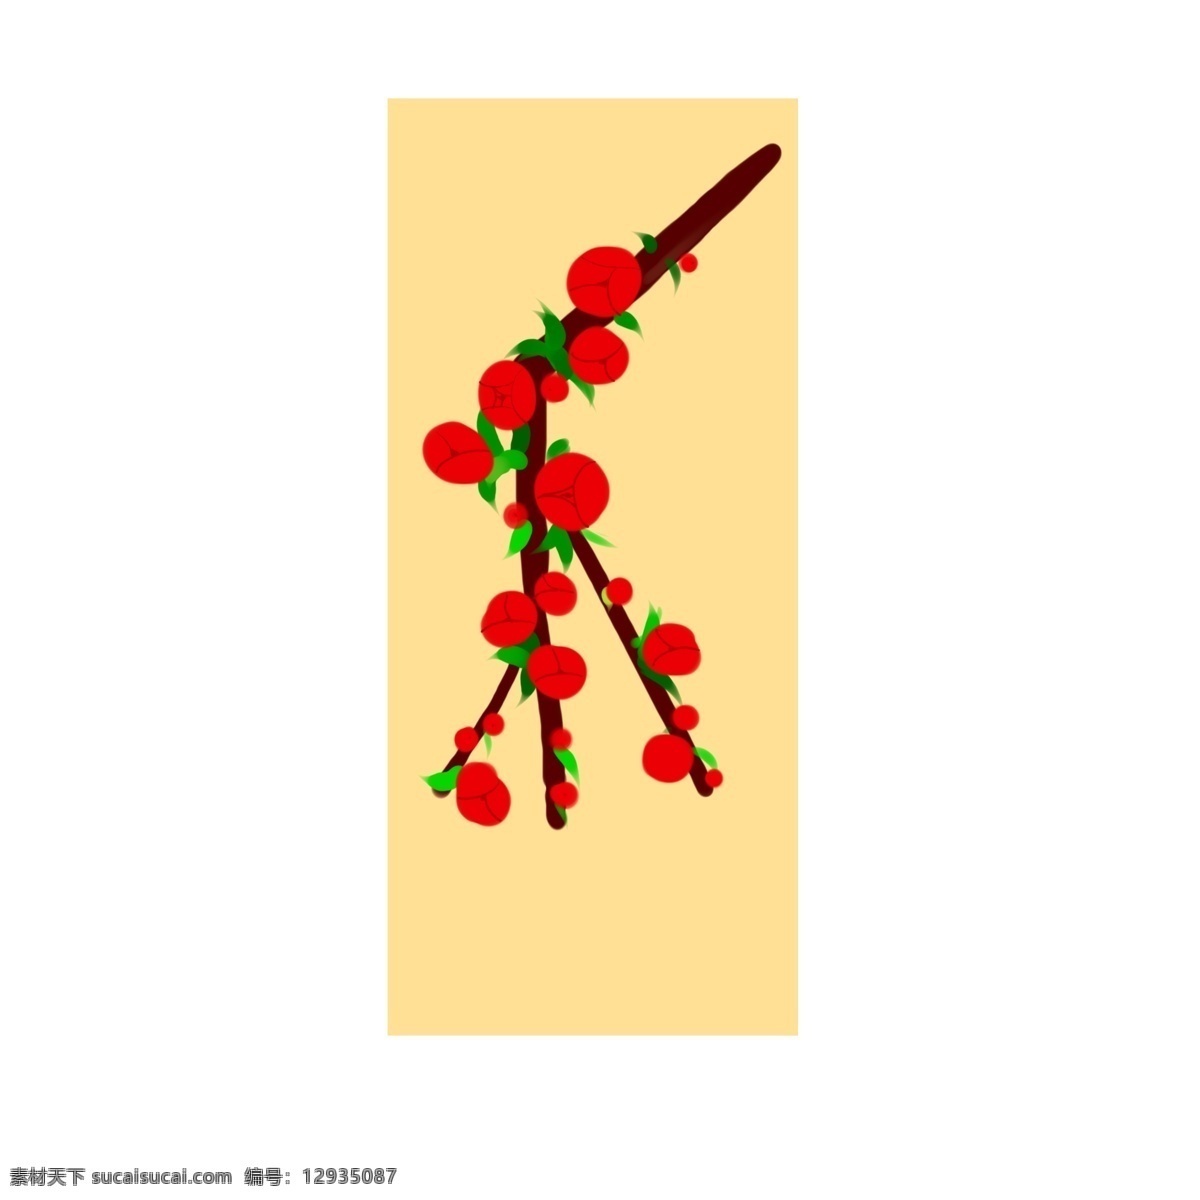 海棠树 红色 花苞 朵 花苞朵 红色的 树枝 方形的背景 叶子 海棠花 原创插画 红色的花苞 方形的